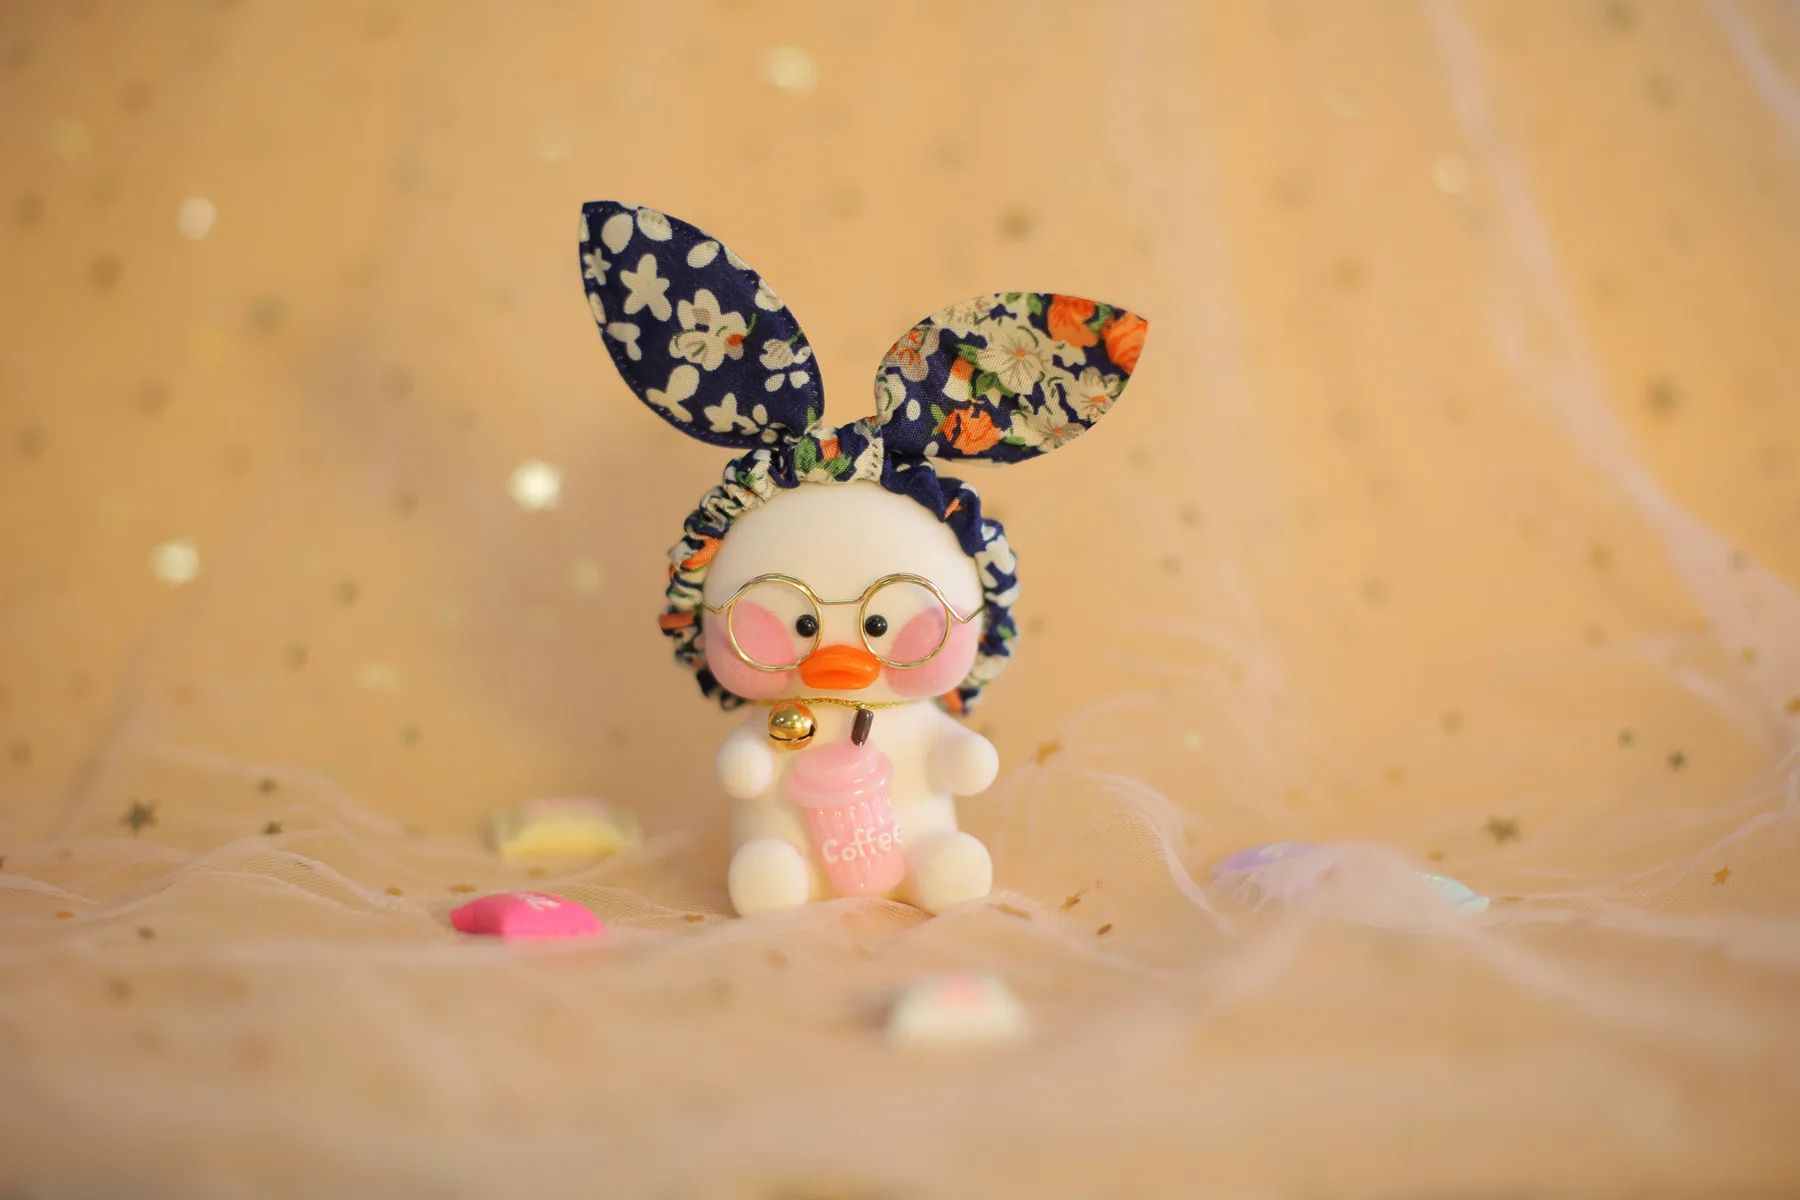 Kawaii подвеска с форме утки брелок мультфильм милый утка автомобиль Декор животные куклы девочка игрушки подарок на день рождения для детей милые плюшевые брелоки - Цвет: 6